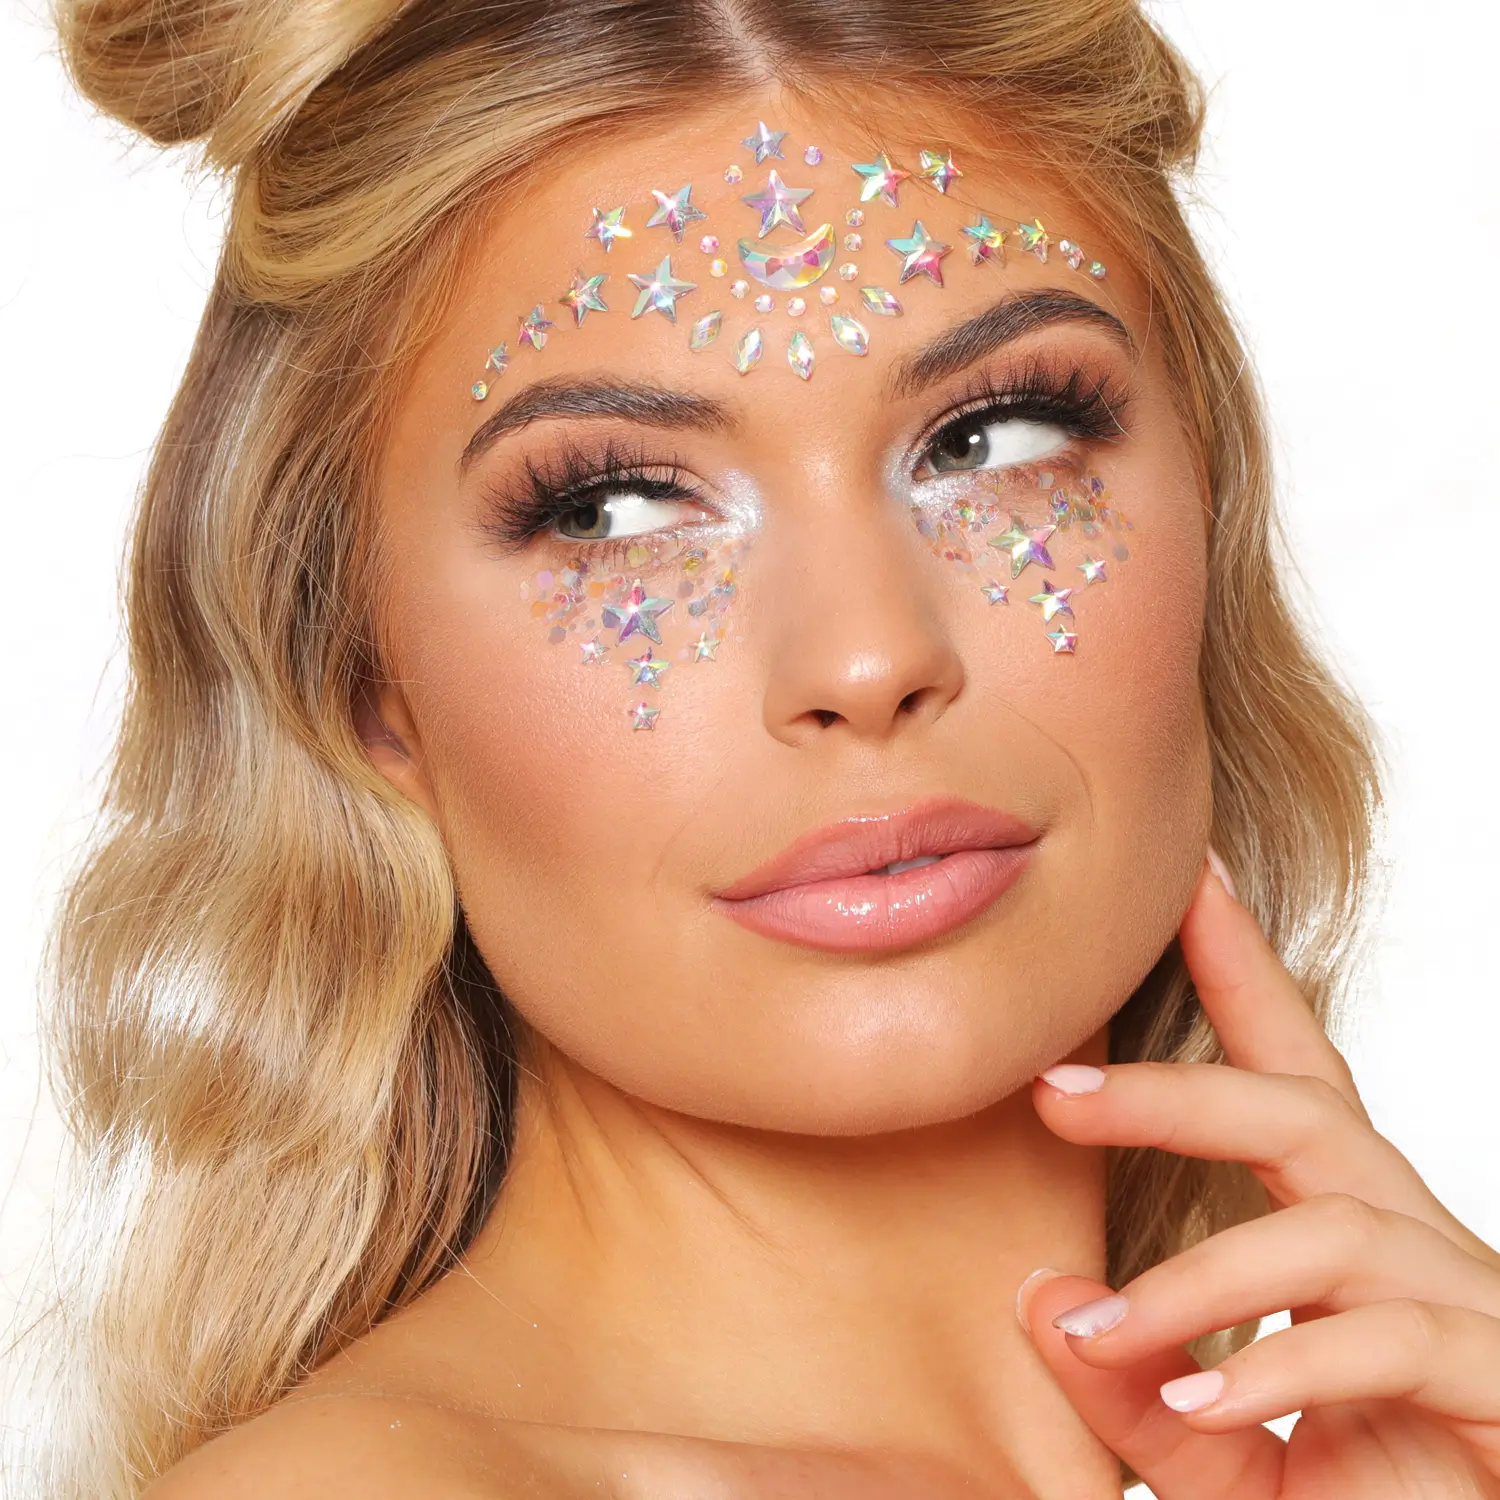 Princess makeup kit | Halloween Costume| Face gems | Face glitter gel